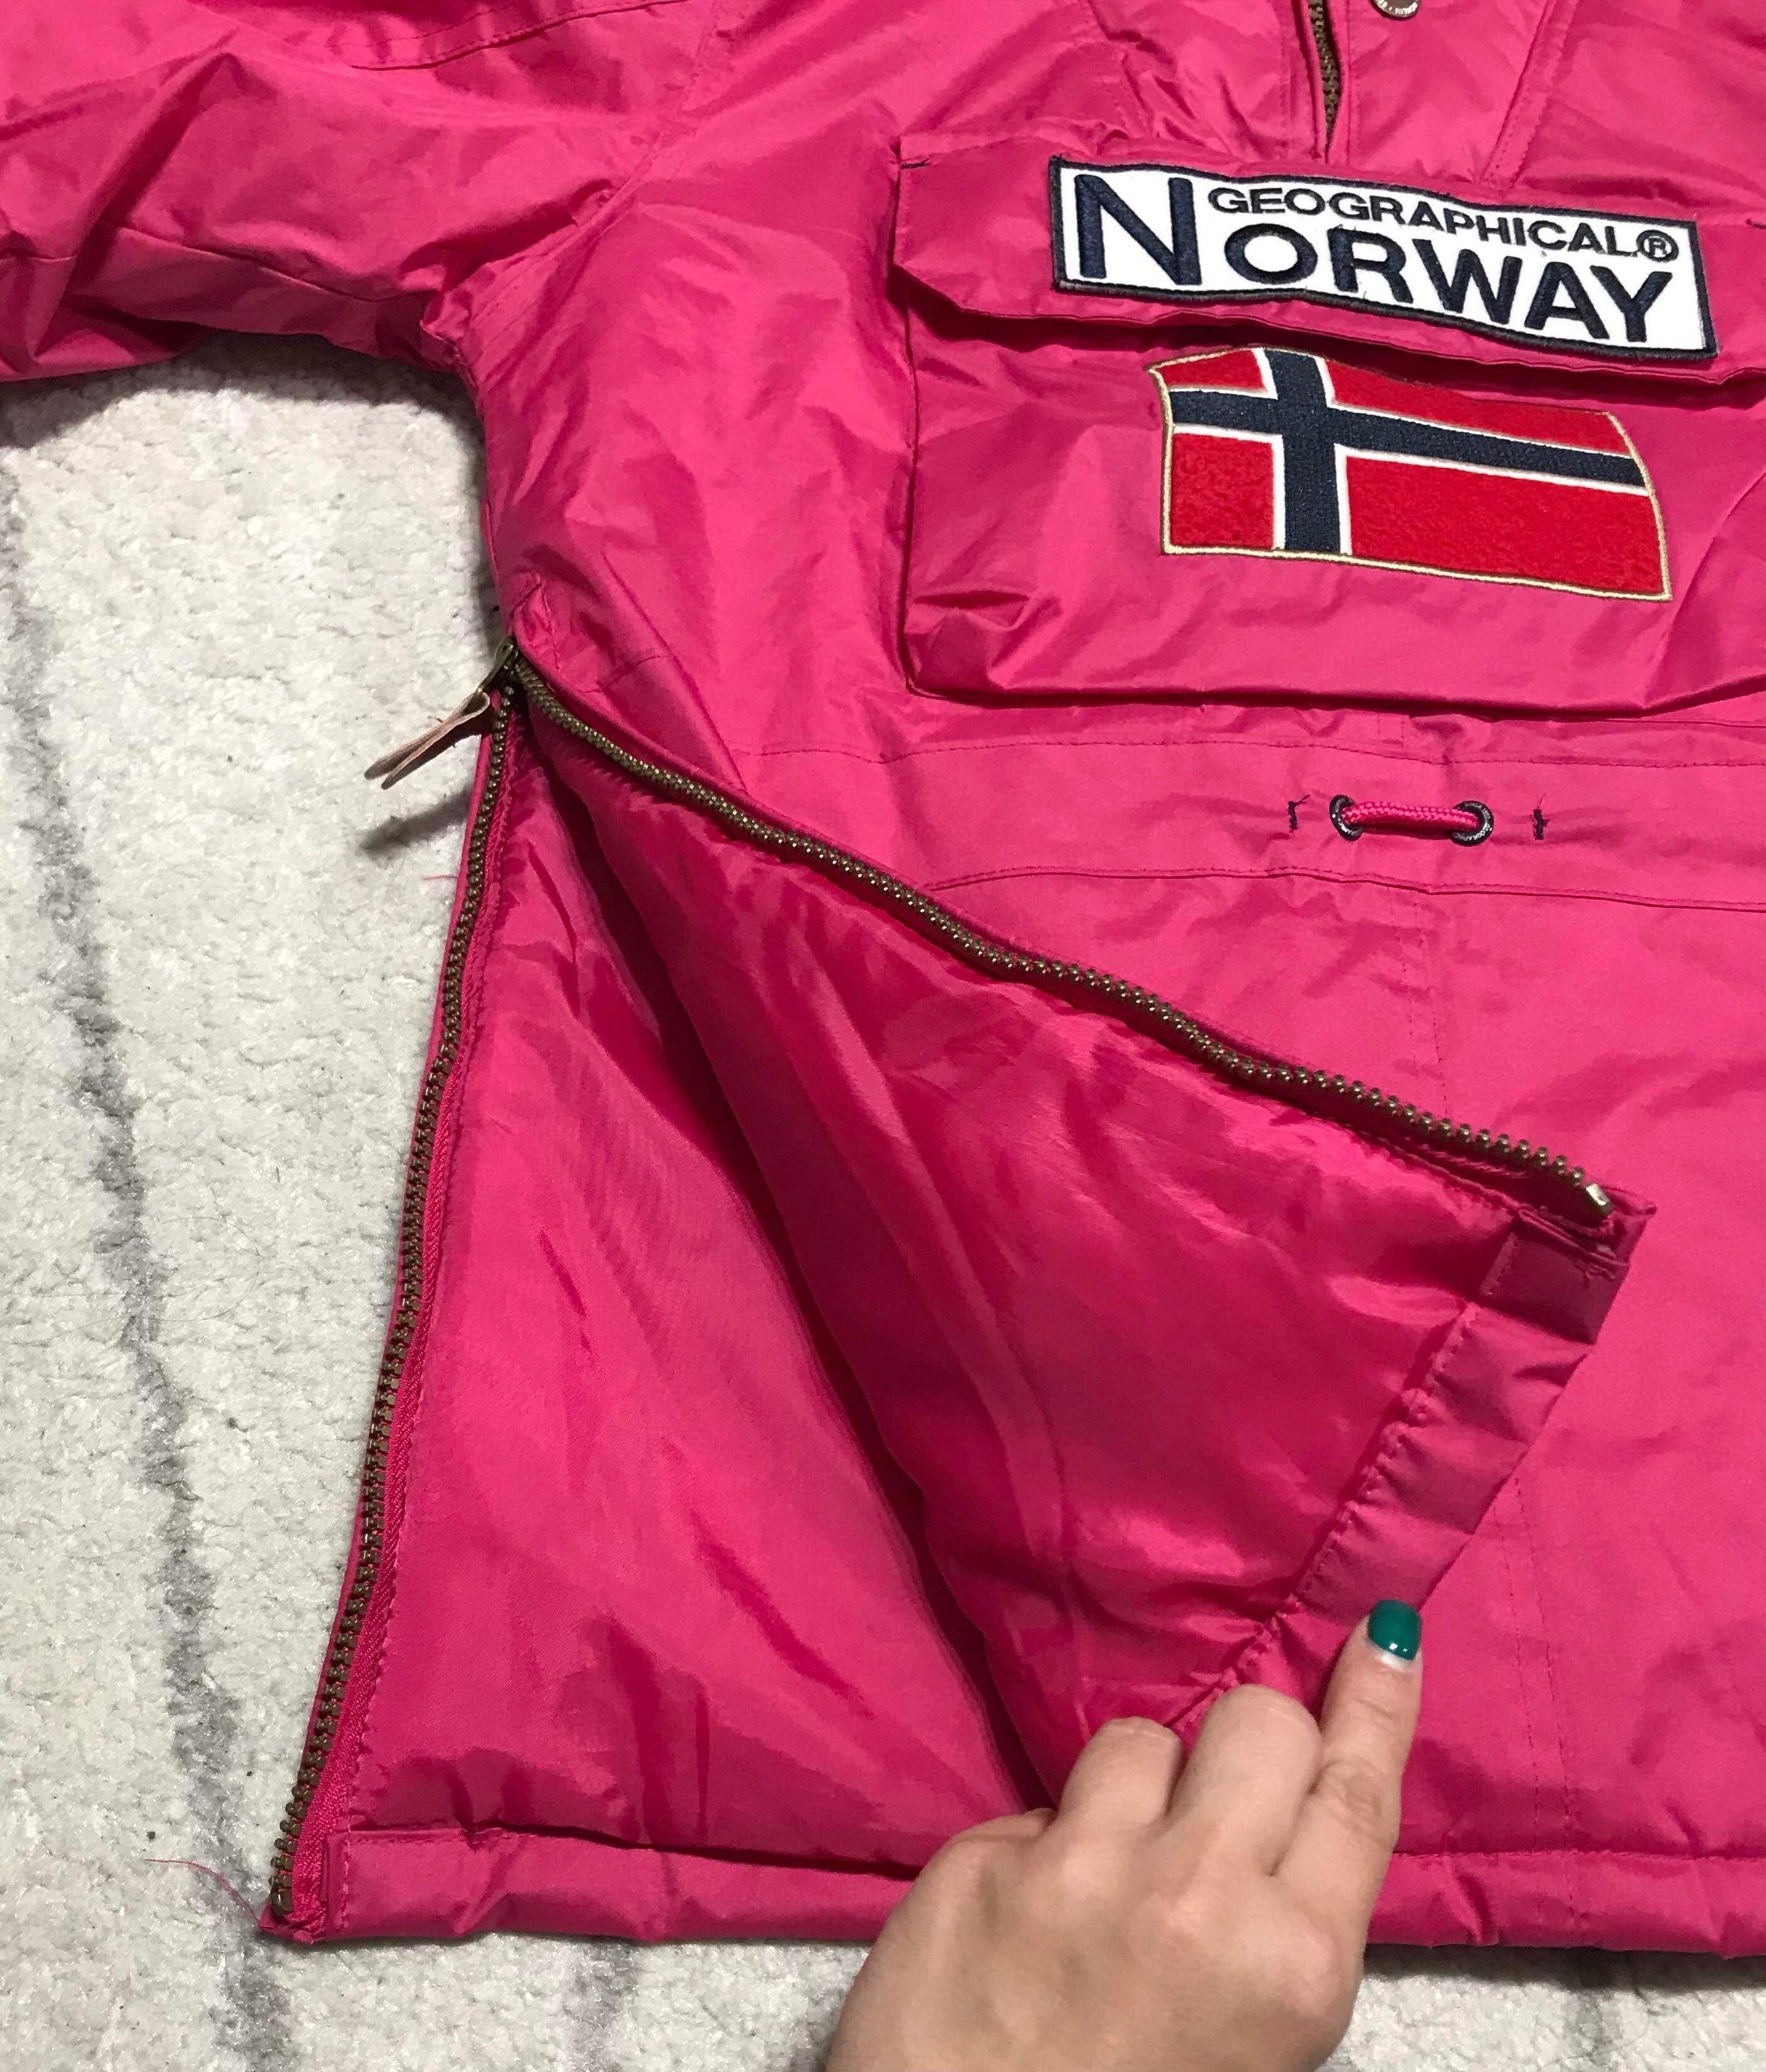 Geaca geographical norway fucsia roz 14 ani geaca fete s jacheta